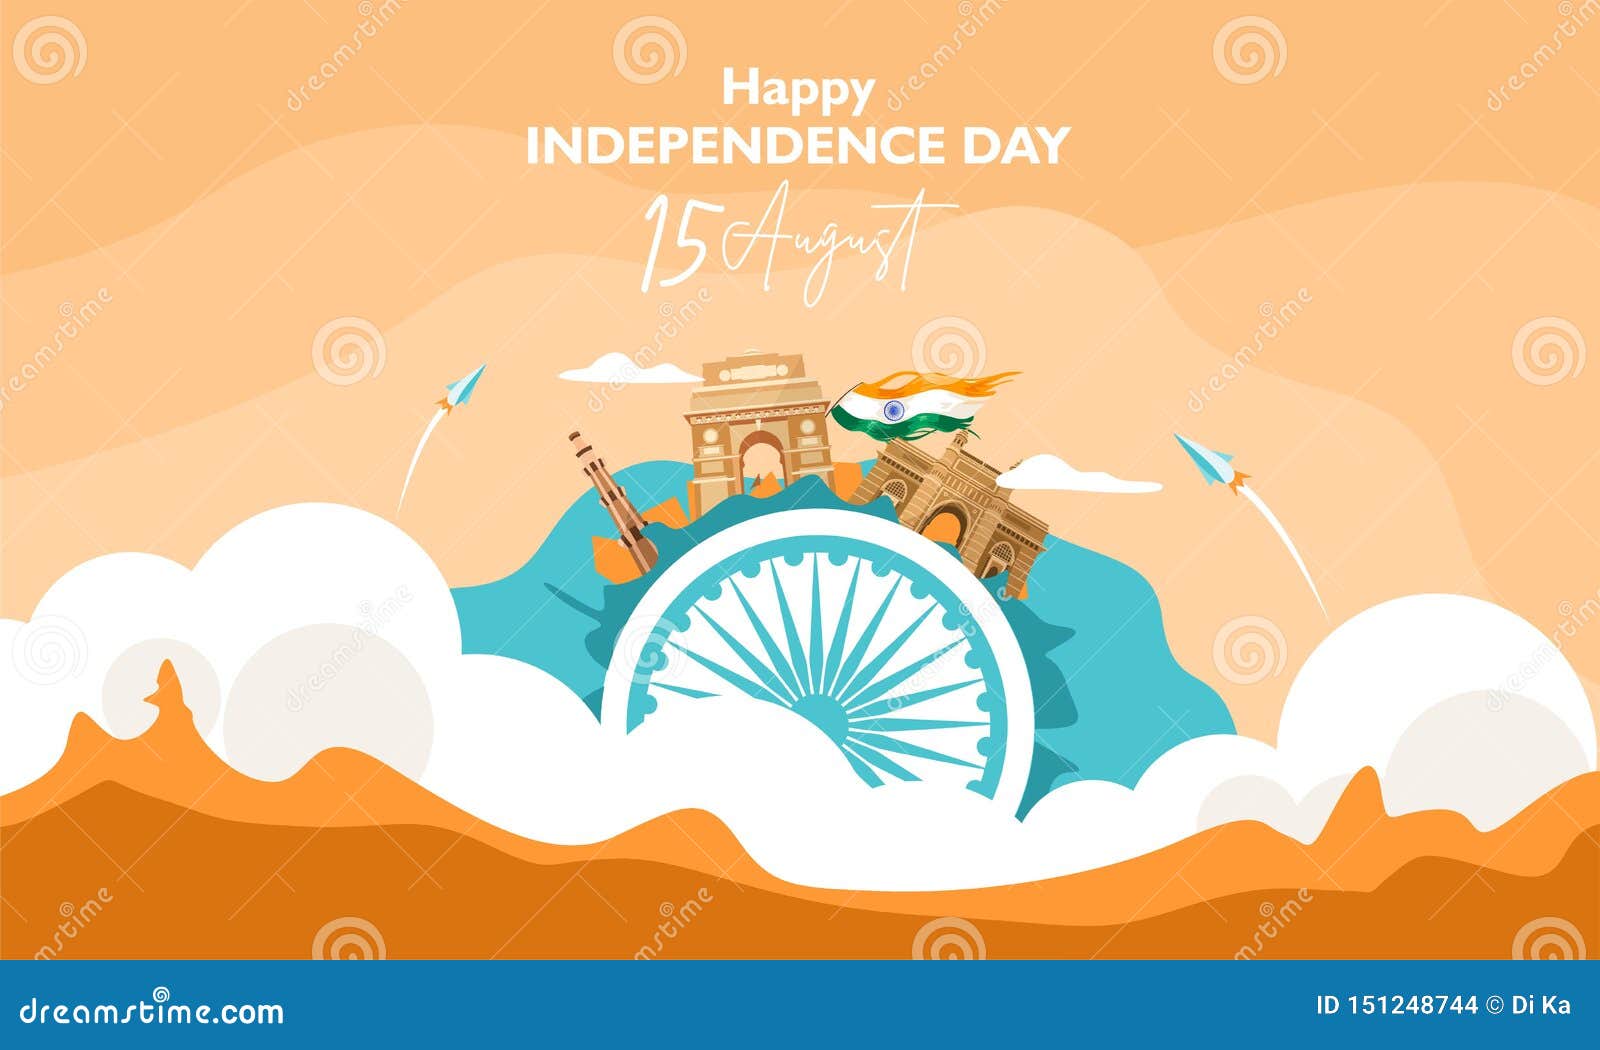 Ngày Độc lập Ấn Độ: Cùng chia sẻ niềm vui của người dân Ấn Độ trong ngày kỷ niệm Độc lập, khi đất nước đã tự do và phát triển hơn bao giờ hết. Hãy xem hình ảnh liên quan và đắm mình trong không khí đầy cảm xúc của ngày lễ này. 